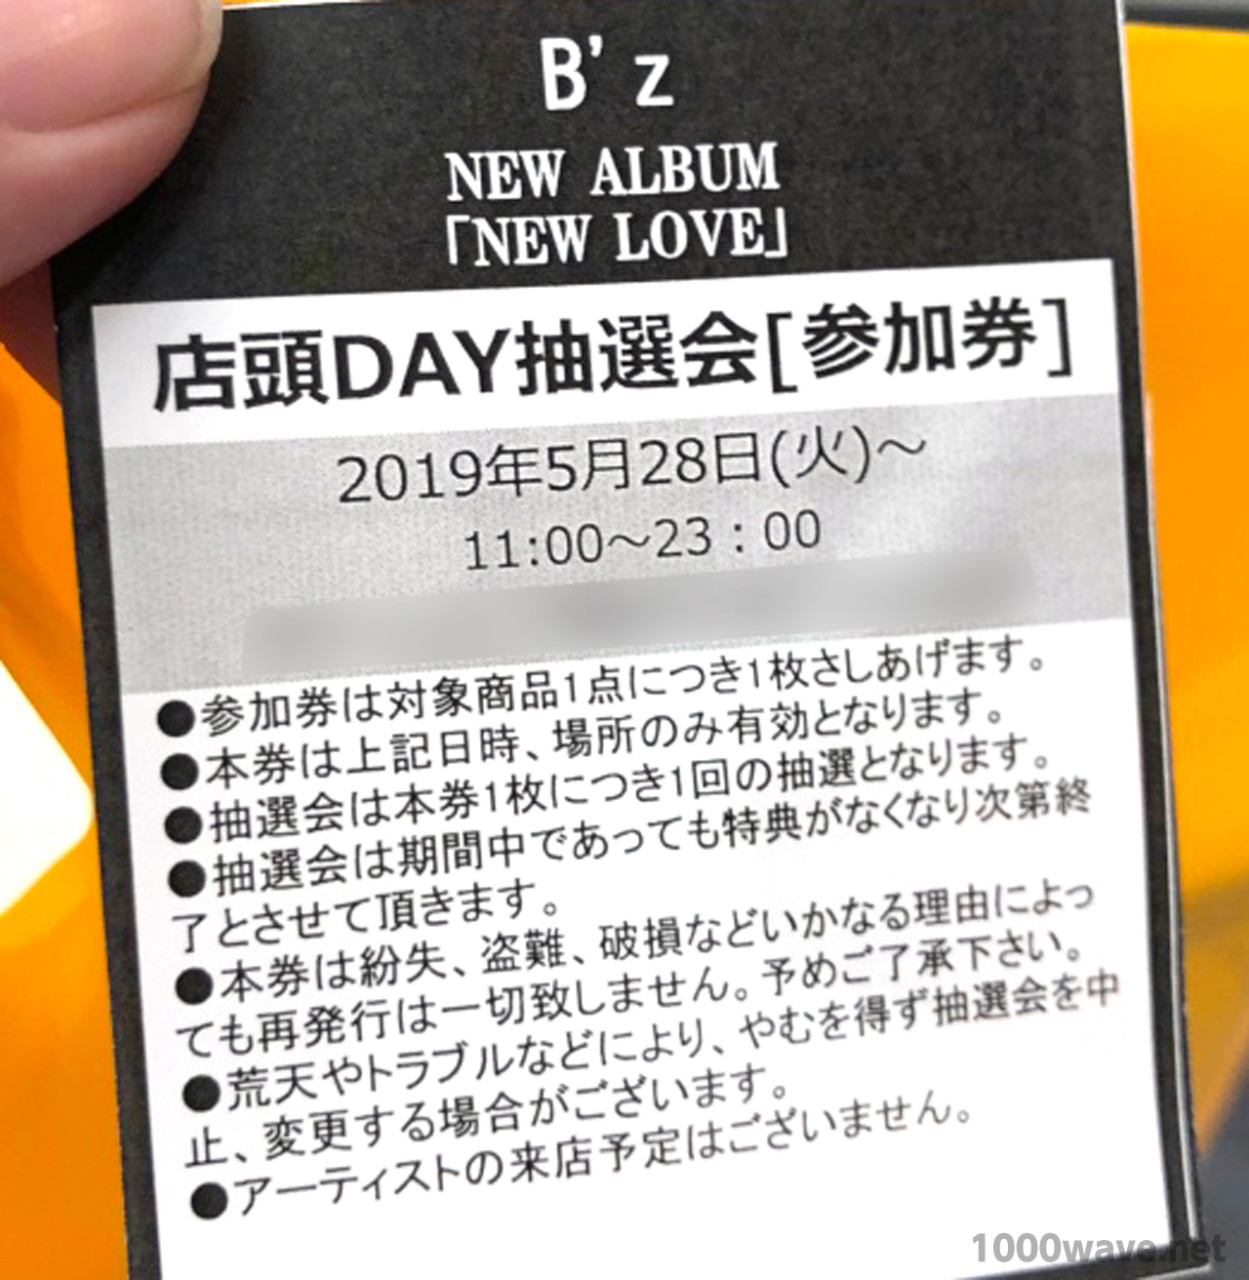 B'z NEW LOVE店頭DAY抽選会購入特典B'z×リポビタンDコラボ限定ボトルの抽選会参加券